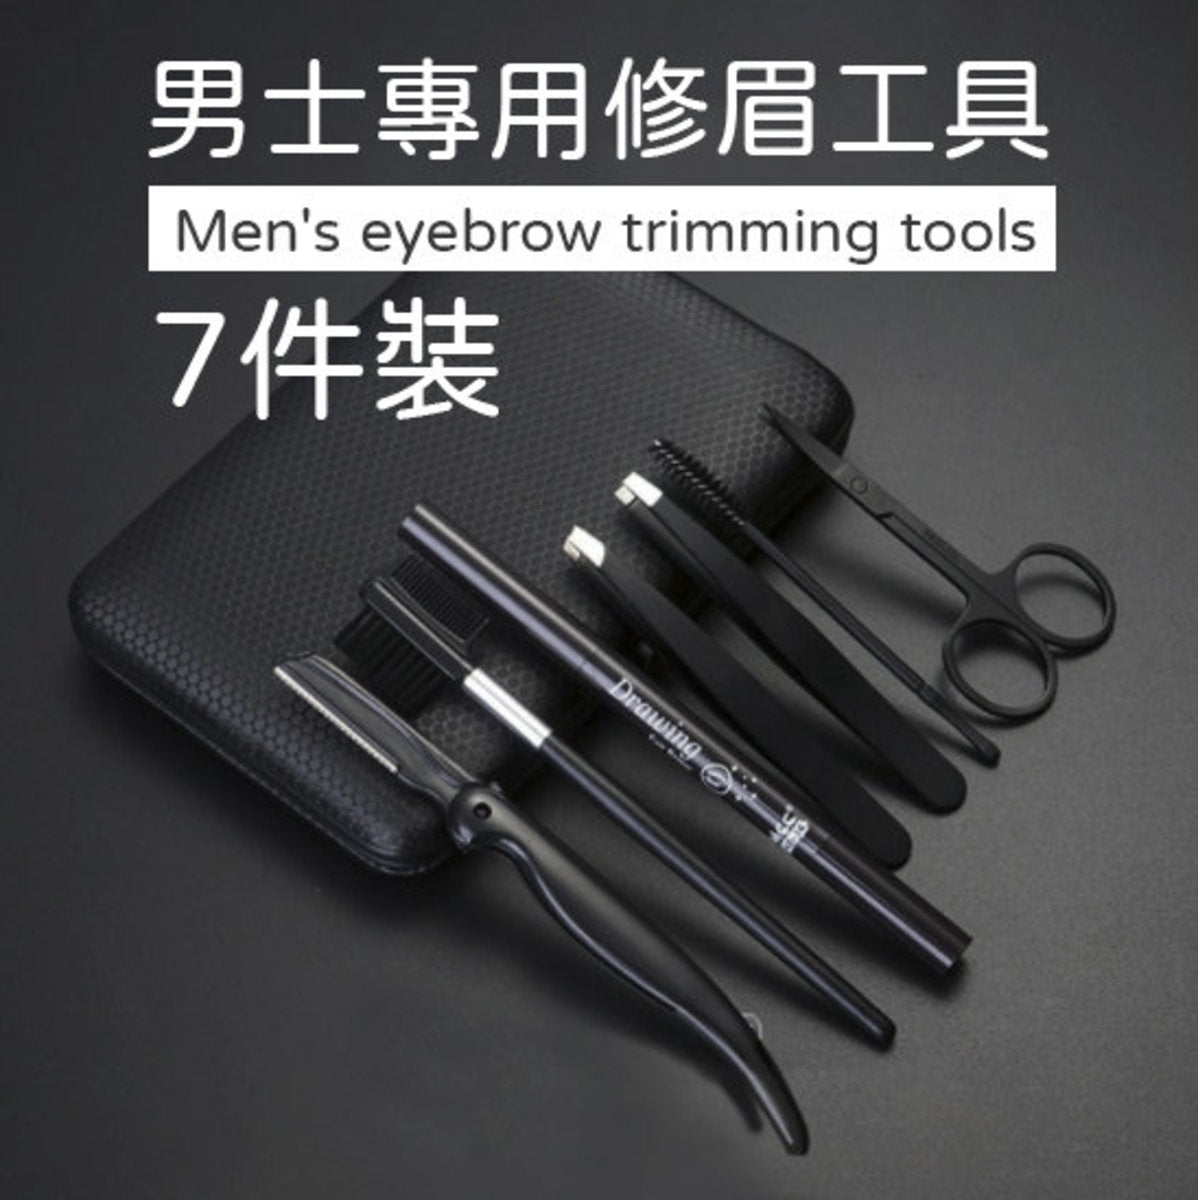 男士专用修眉工具7件套男士美容眉毛钳眉刀